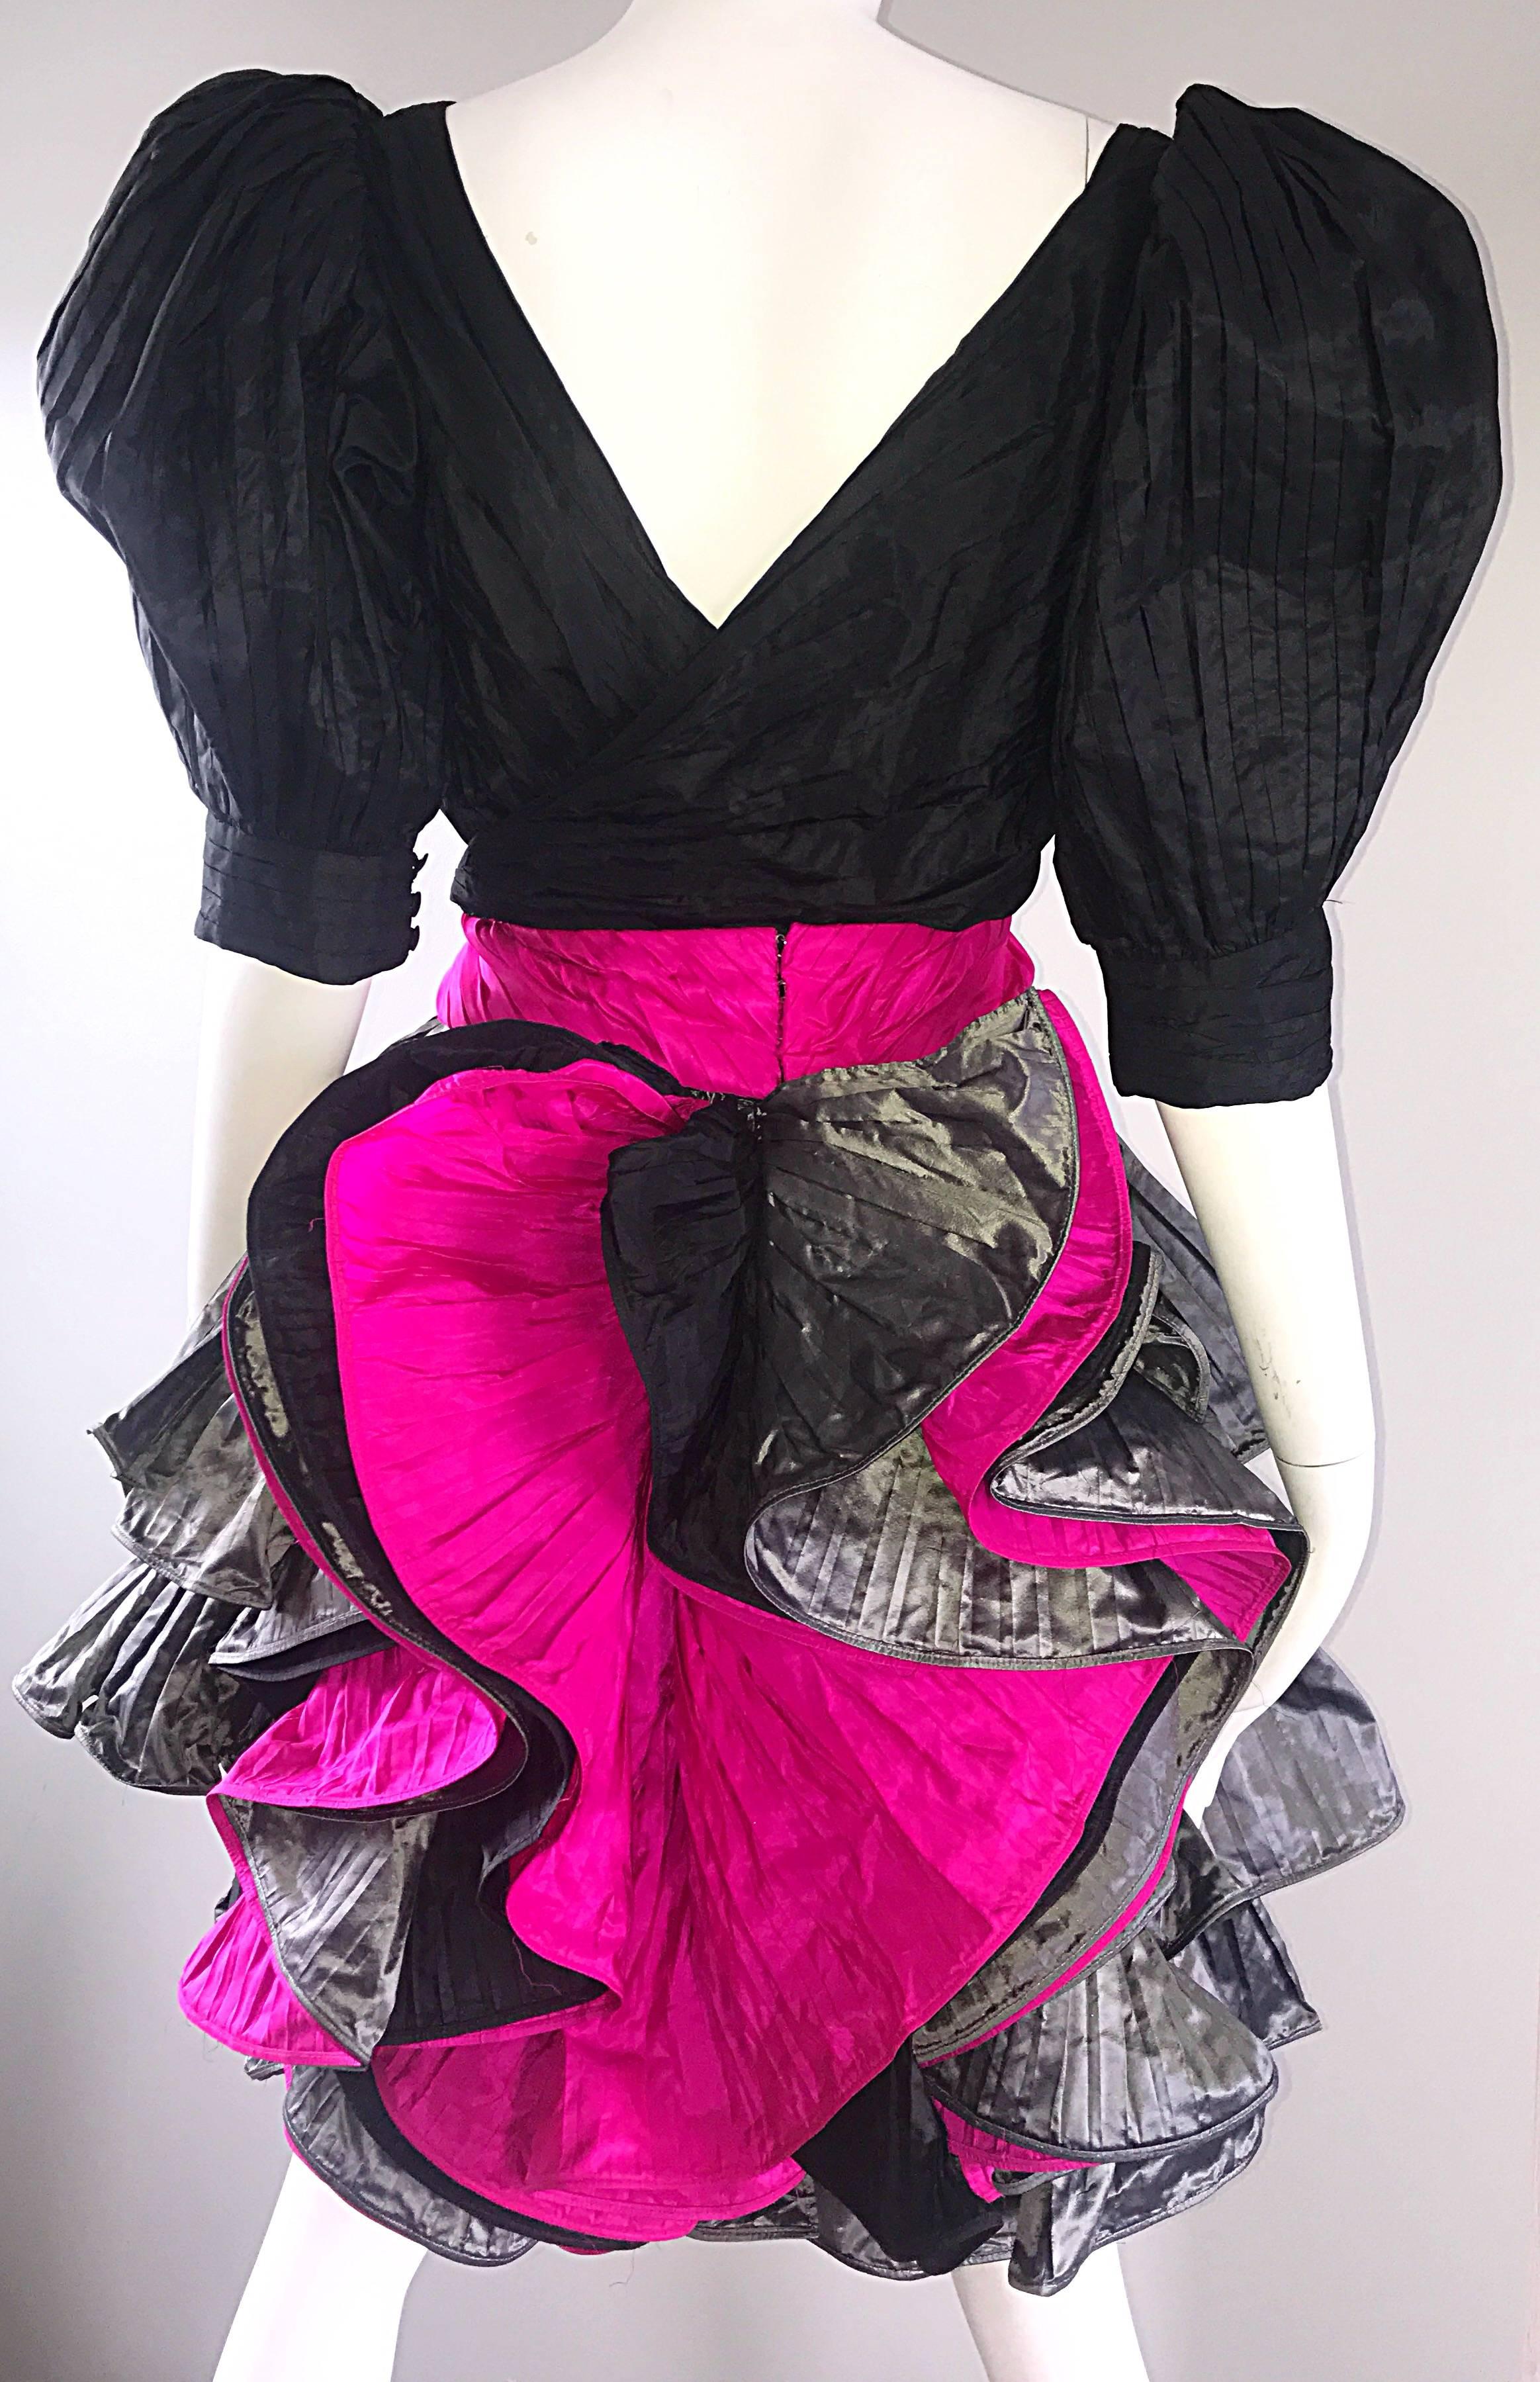 Sensationnelle robe de cocktail vintage PAUL LOUIS ORRIER Couture 1980 / 80s en taffetas de soie ! Il présente un corsage plissé ajusté noir et des manches bouffantes Avant Garde. La ceinture rose fuchsia s'accroche dans le dos. Jupe plissée en